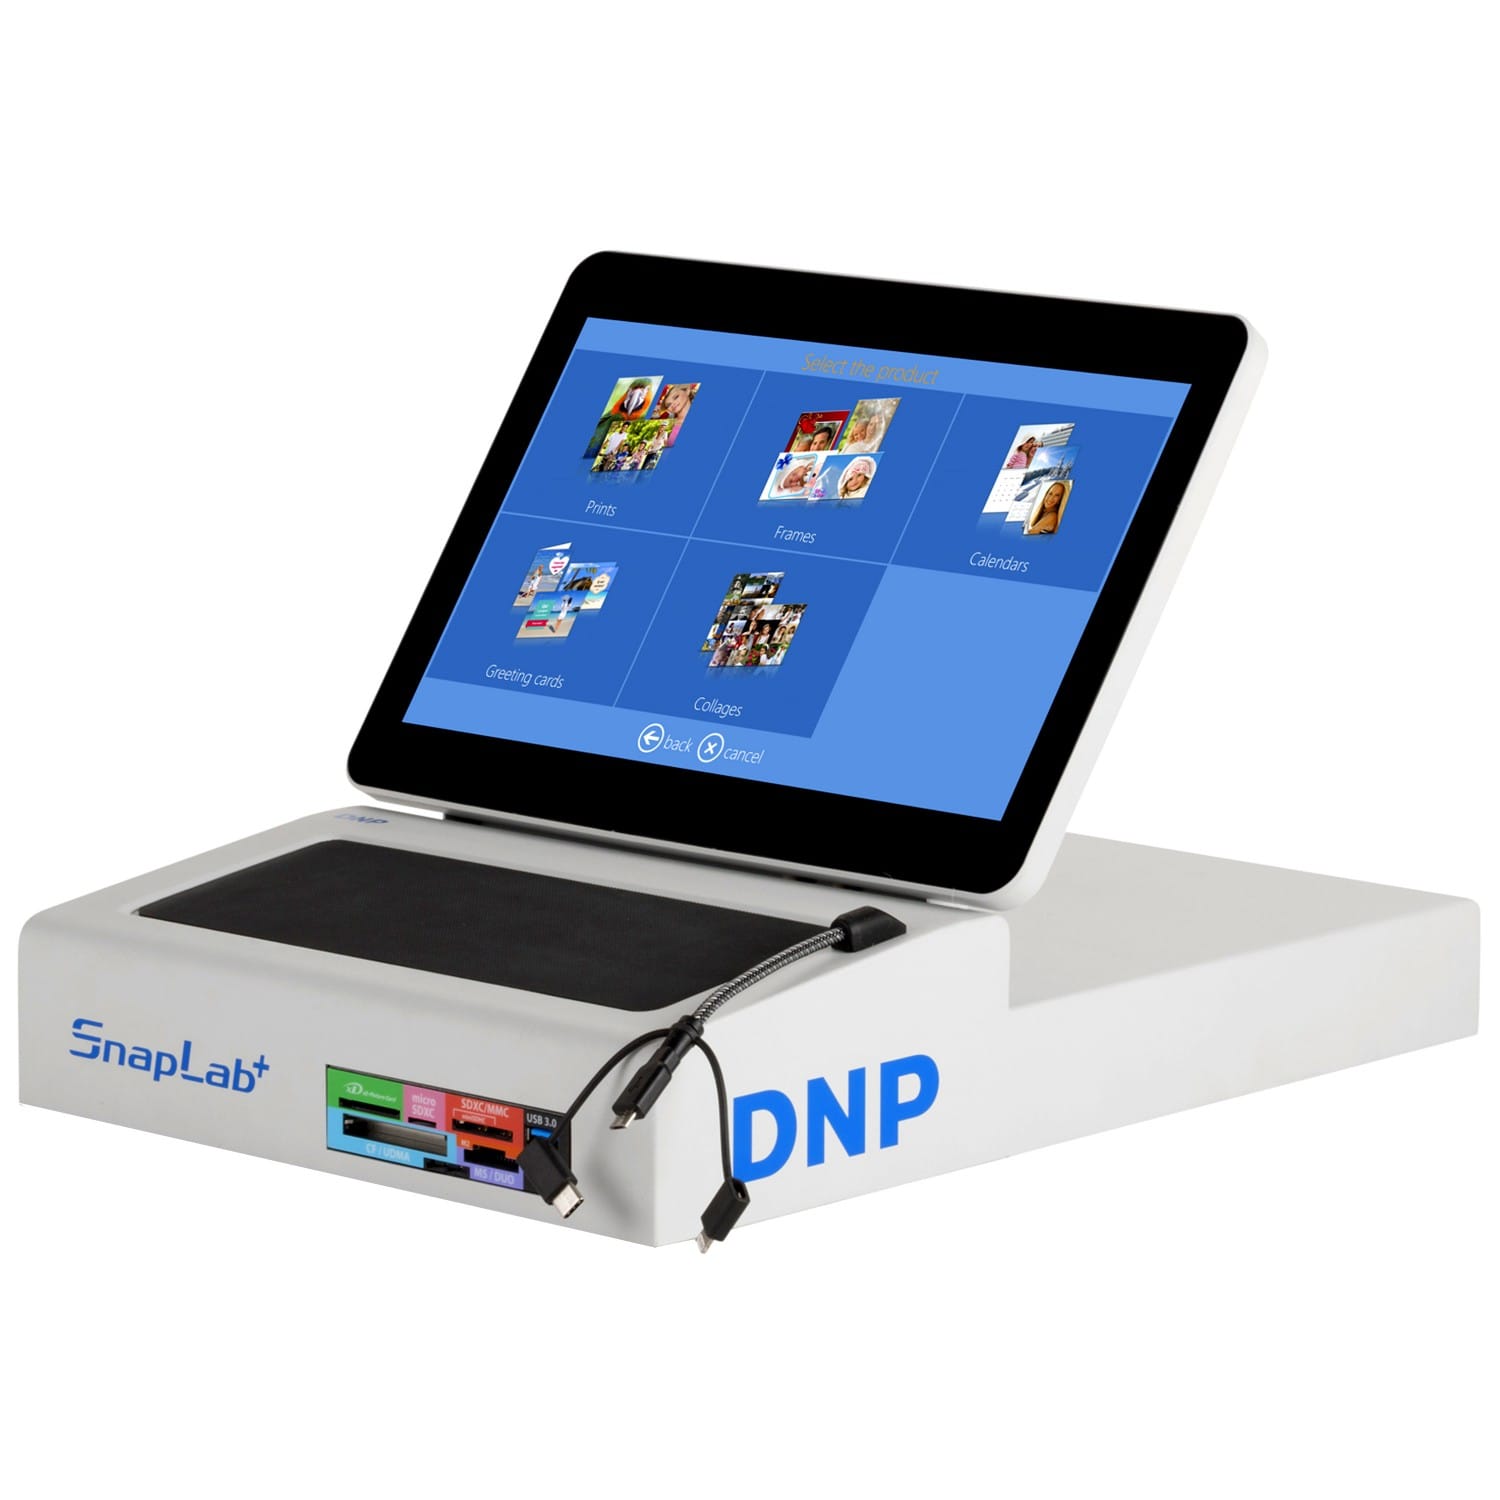 Kit imprimante thermique DNP DNP DS620 + 1 carton de consommables pour 400  tirages 15x20cm ou 800 tirages 10x15cm (DSP6201520)